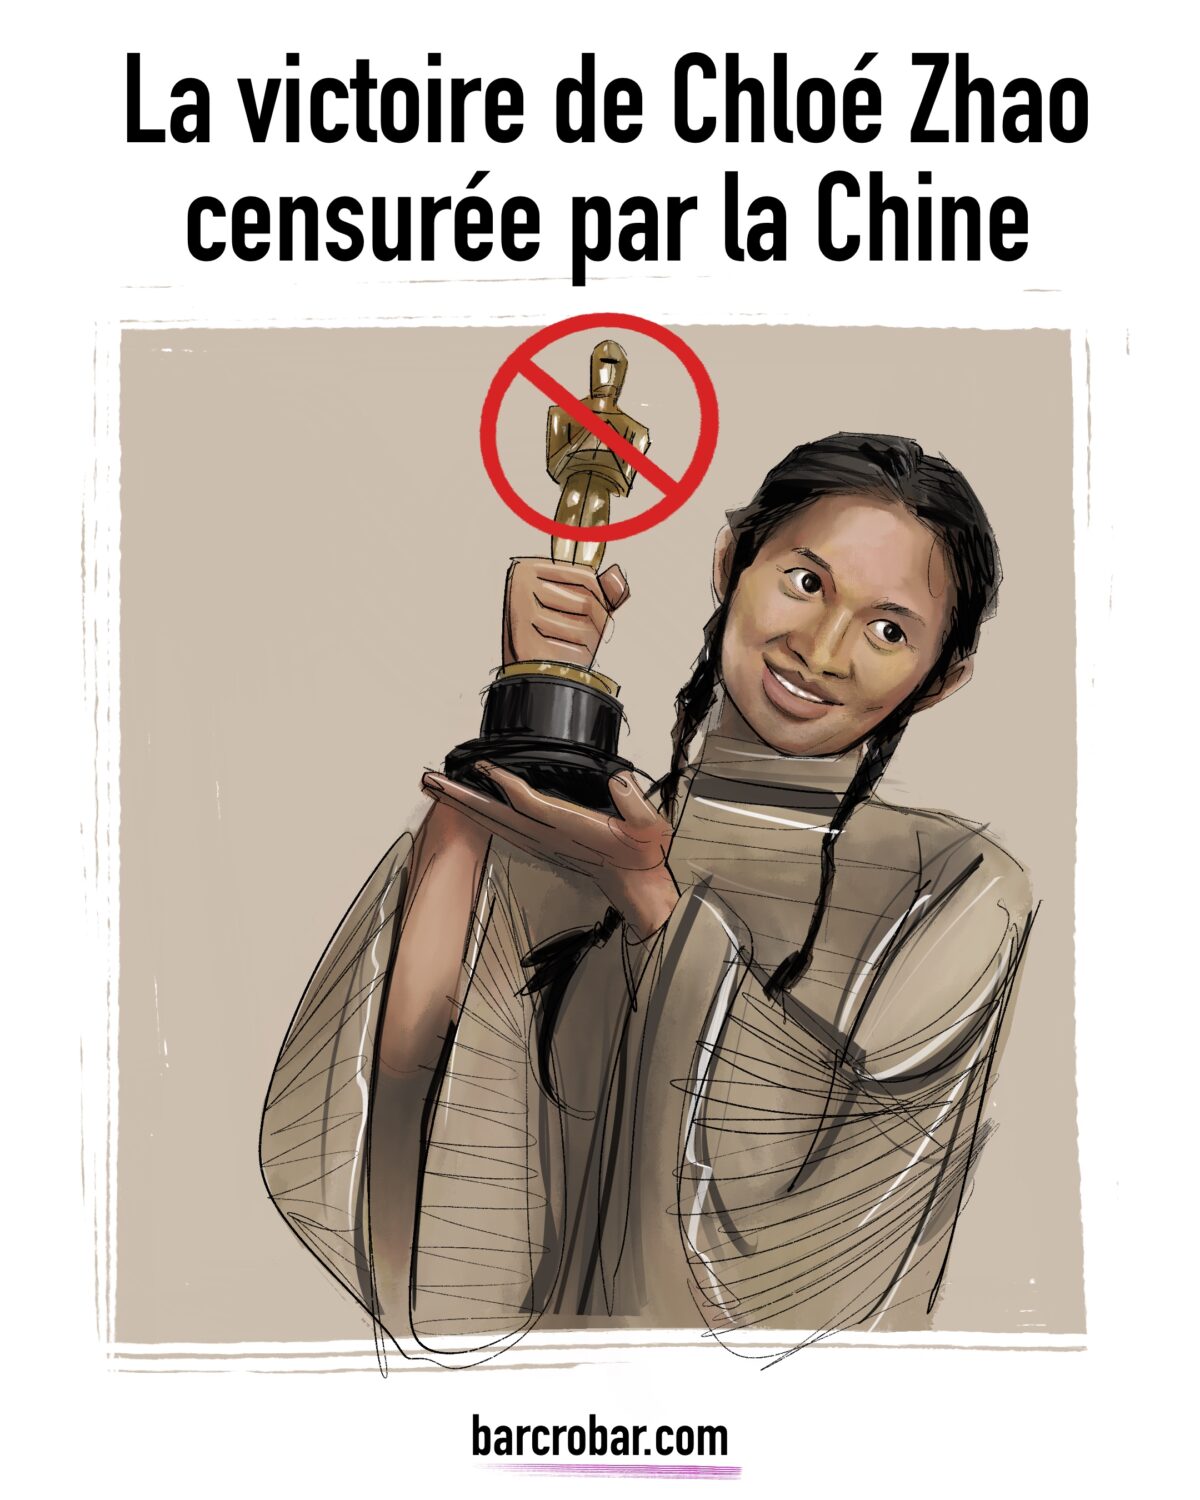 La victoire de Chloé Zhao censurée par la Chine